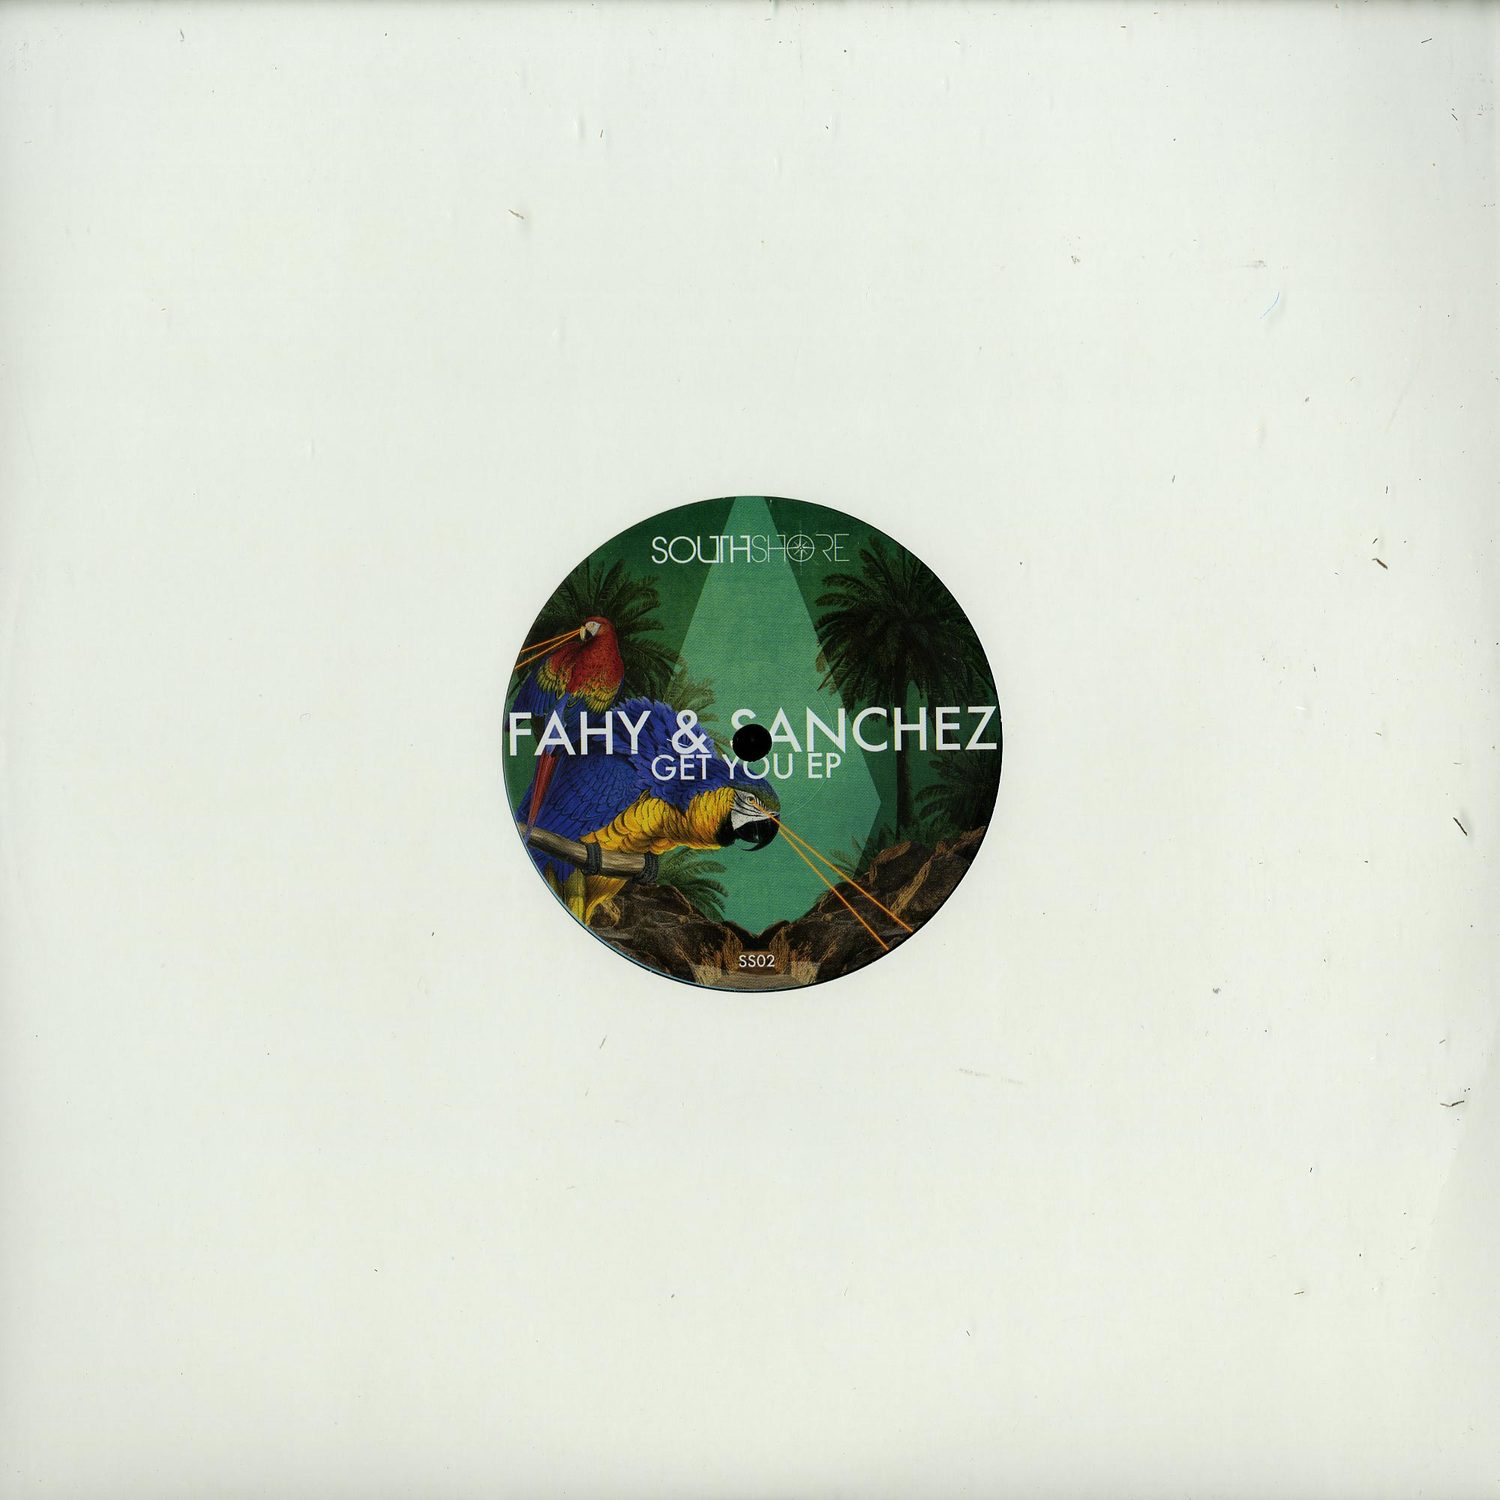 Fahy & Sanchez - GET YOU EP